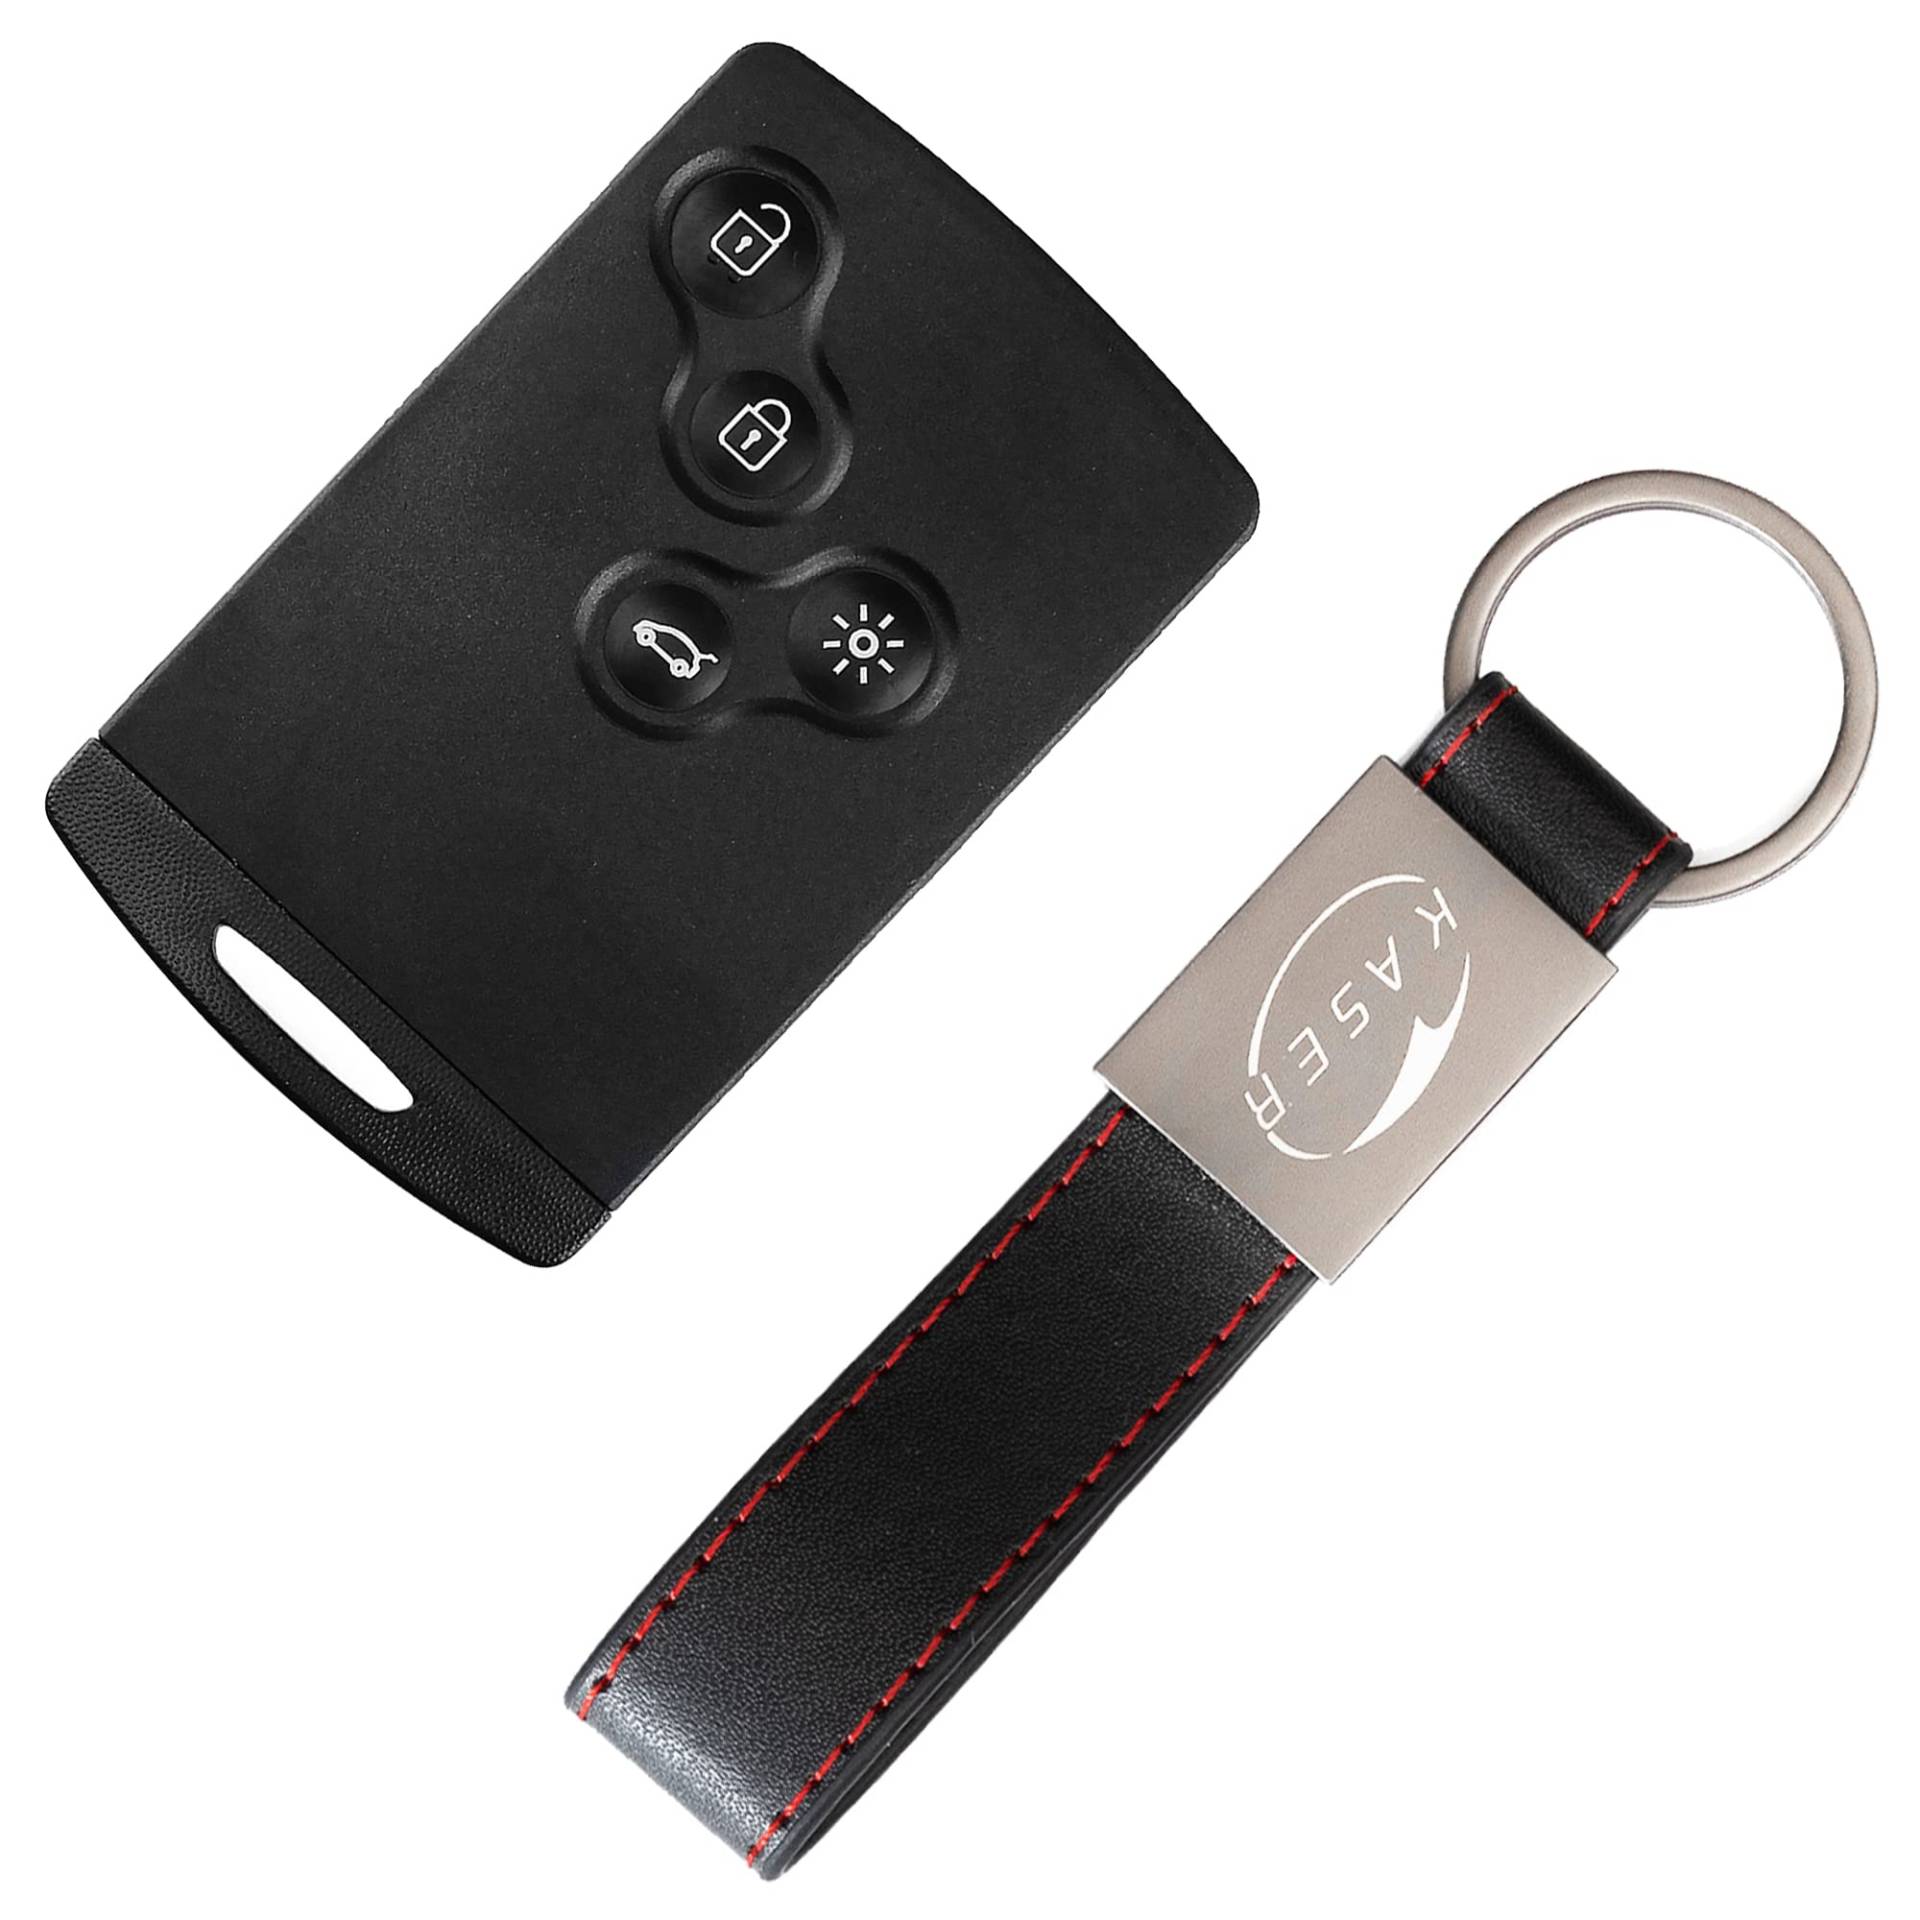 KASER Schlüssel Gehäuse Fernbedienung kompatibel für Renault Megane Koleos Scenic Clio Laguna Autoschlüssel Keyless 4 Tasten Funkschlüssel mit Leder Schlüsselanhänger von Kaser